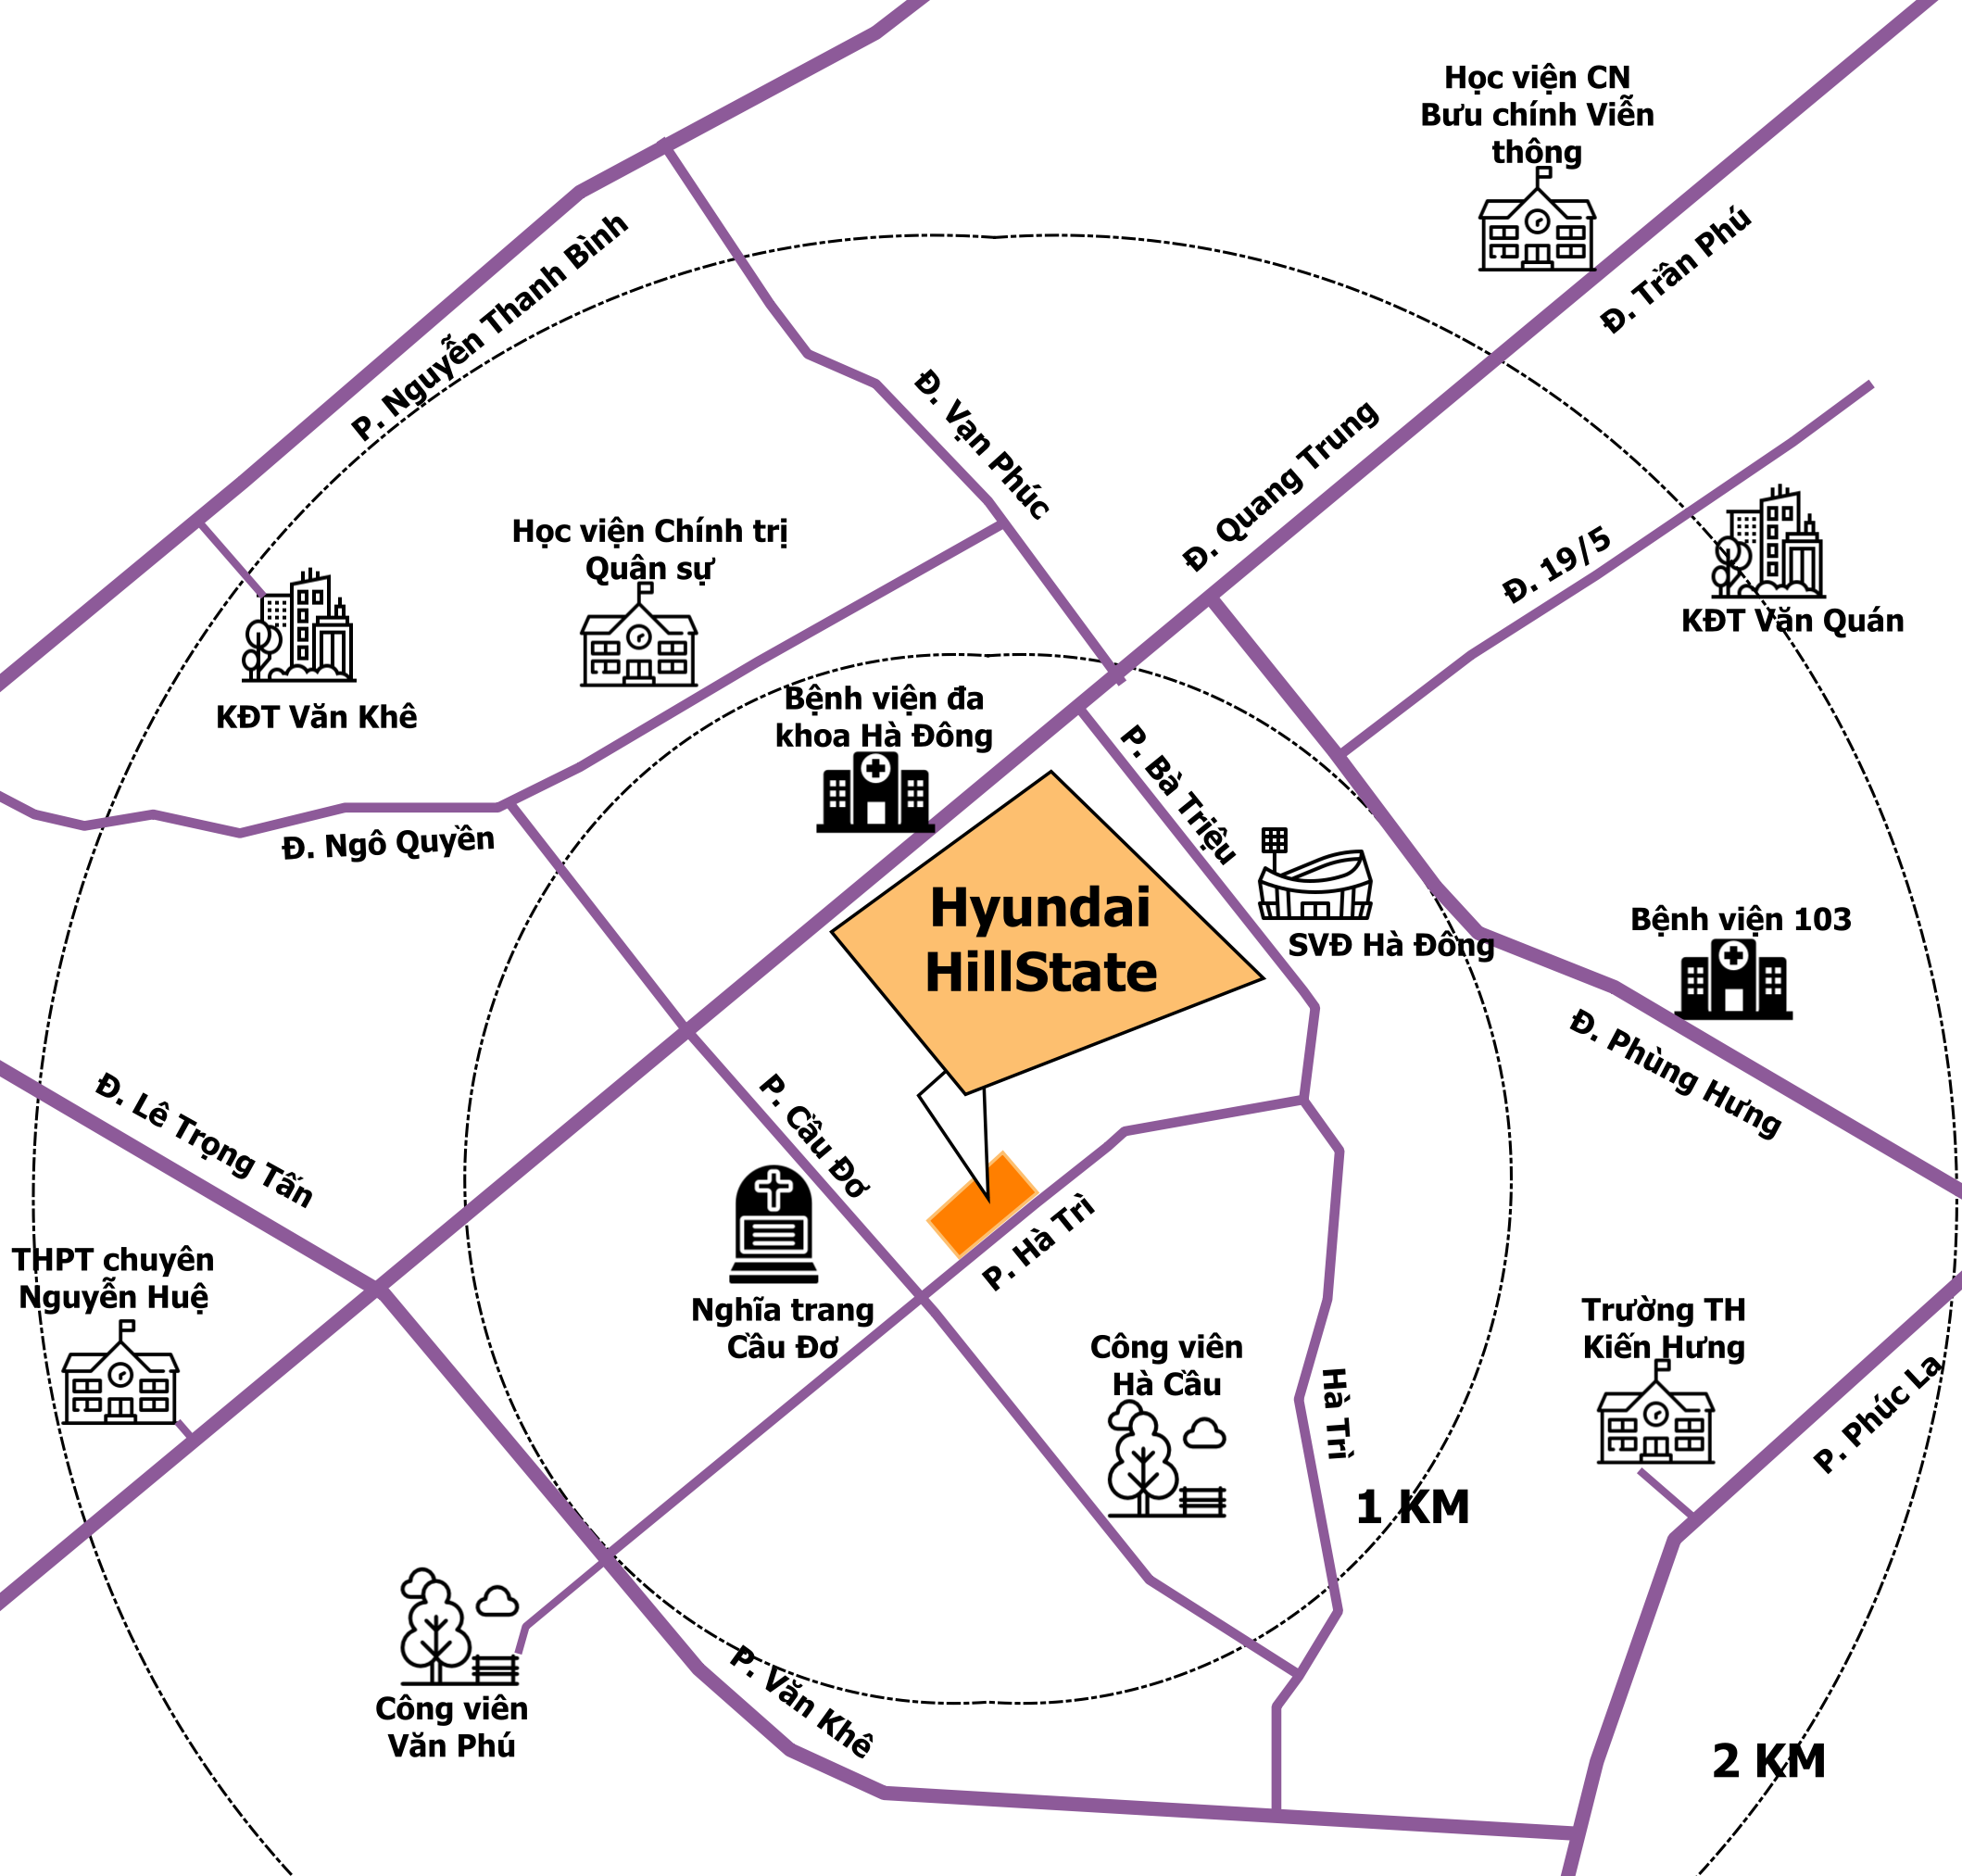 Cho mướn nhà ở Hyundai Hillstate giá rất rẻ năm 2021  Huyndai Hillstate